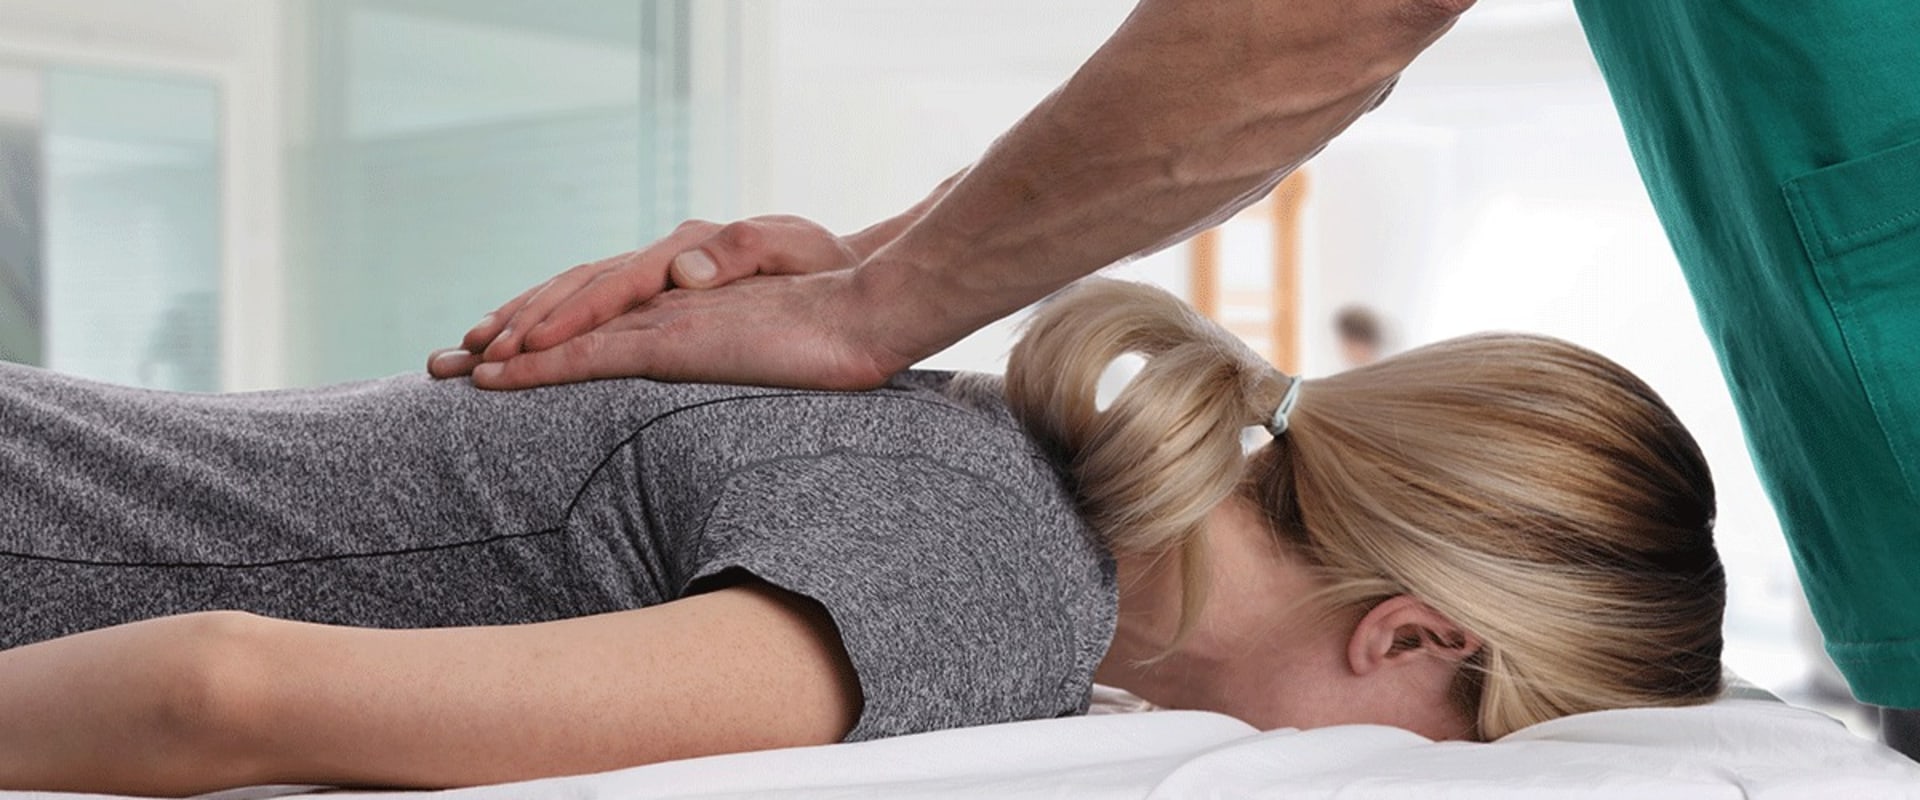 Can chiropractor make injury worse?